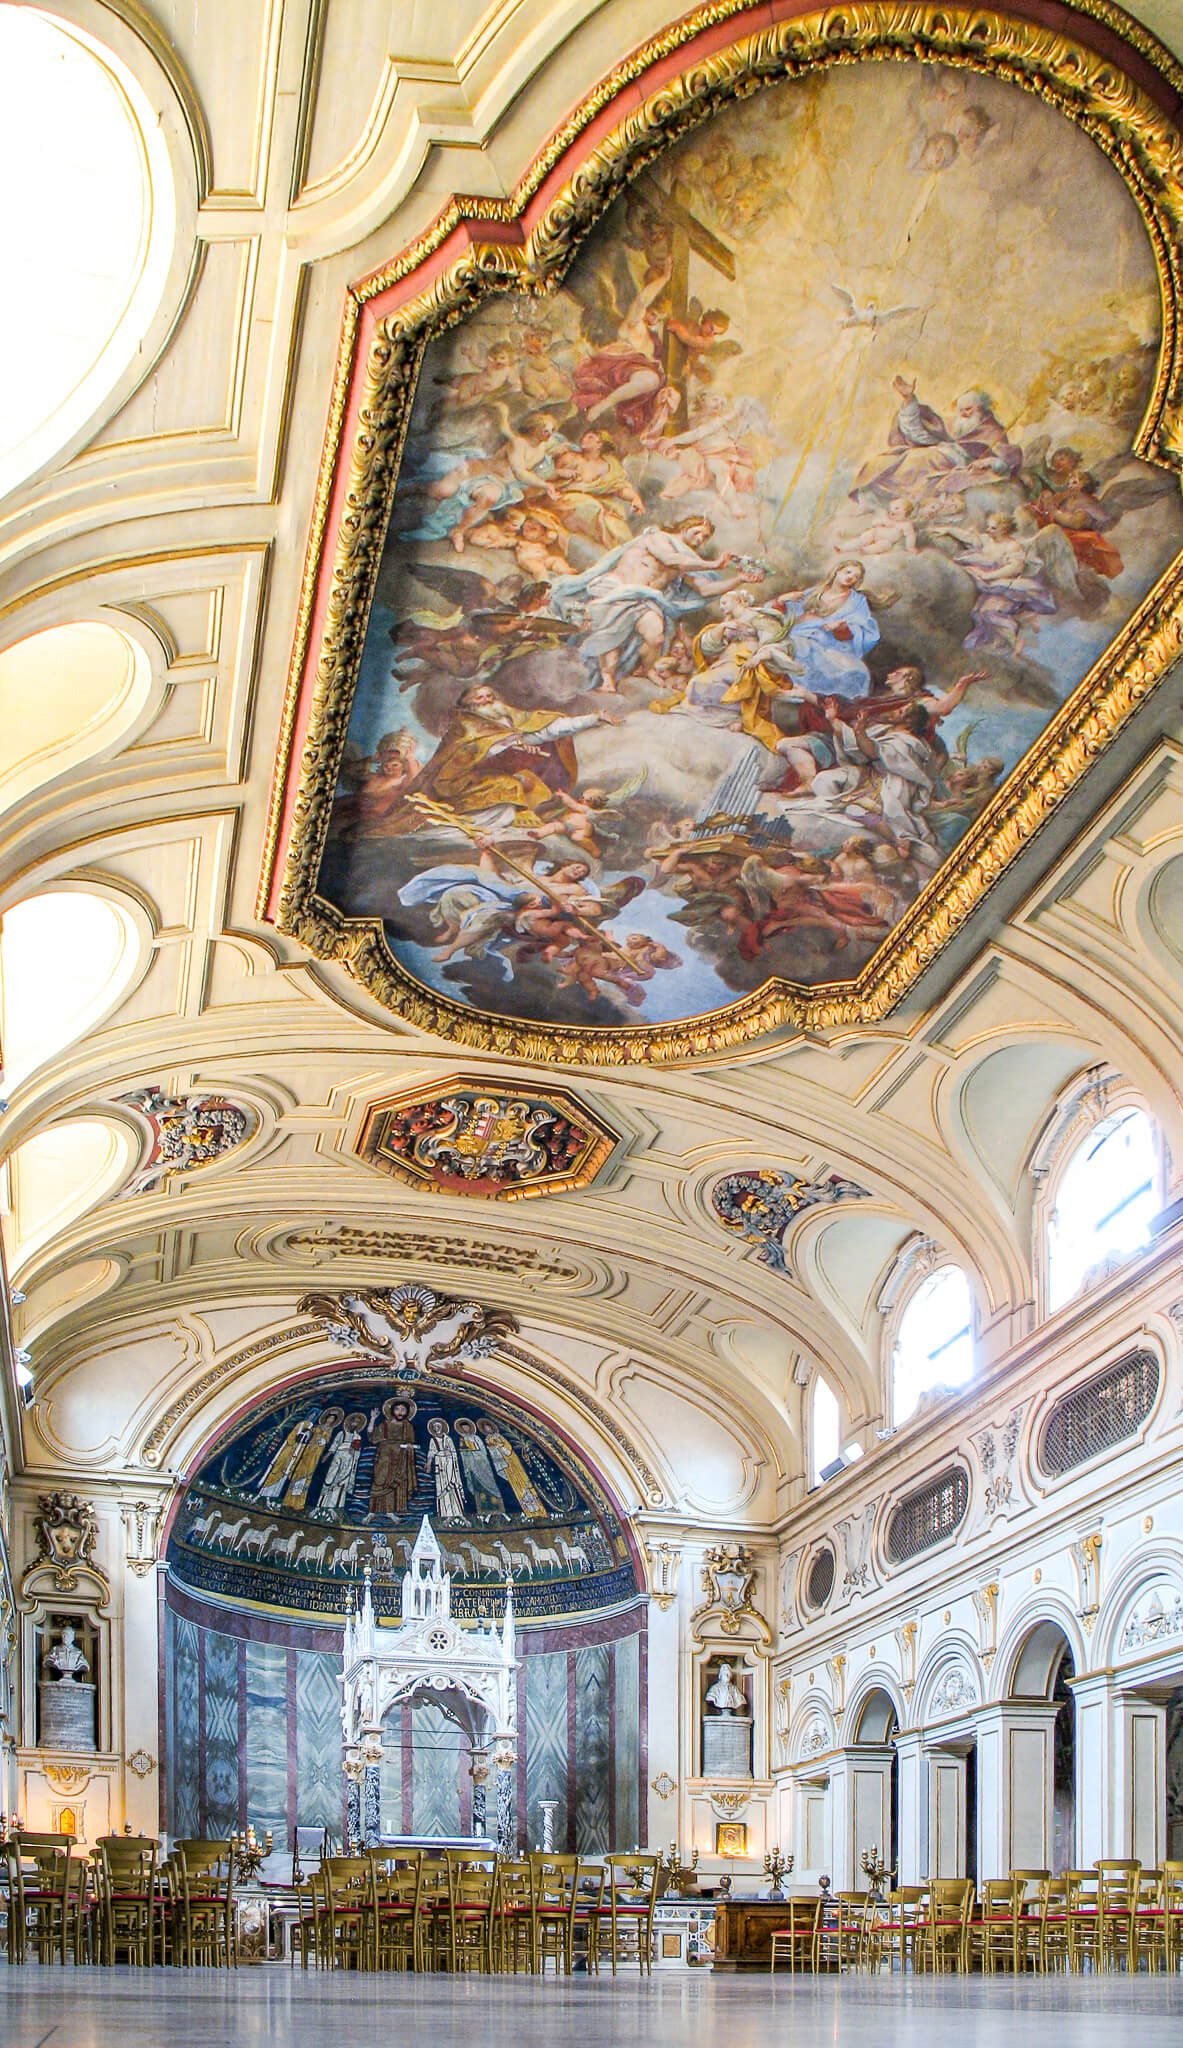 The interior of Santa Cecilia in Trastevere